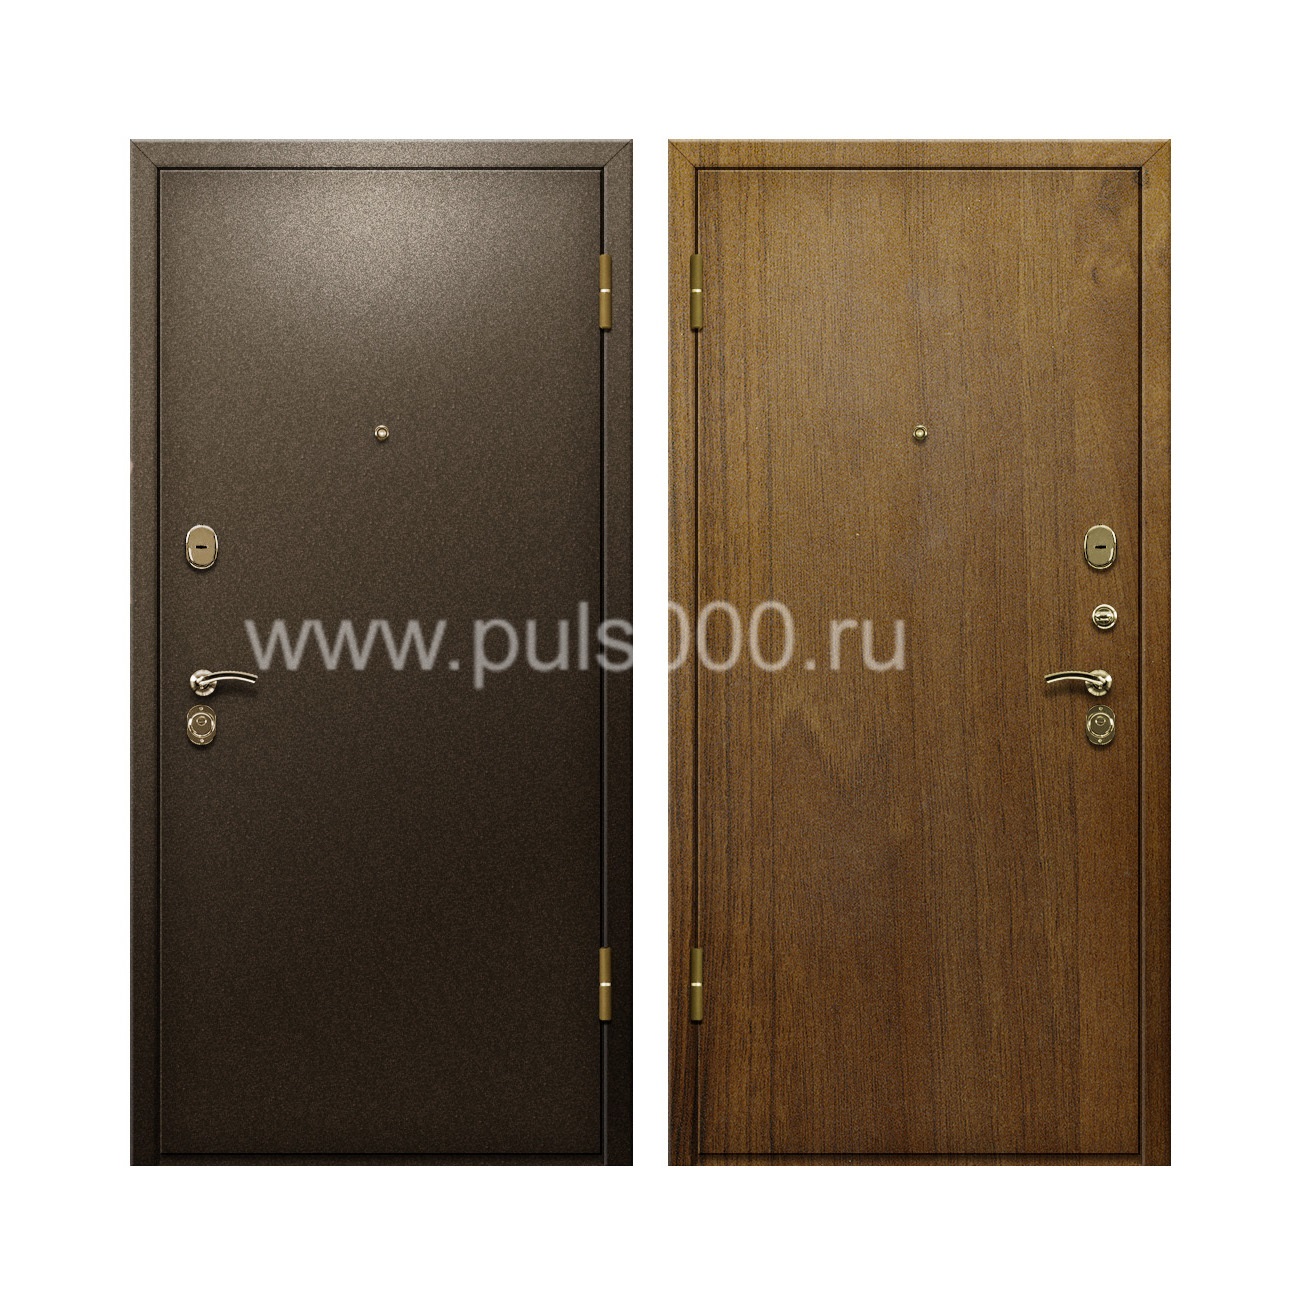 Входная дверь с окрасом из порошка и отделкой ламинатом PR-90, цена 20 000  руб.